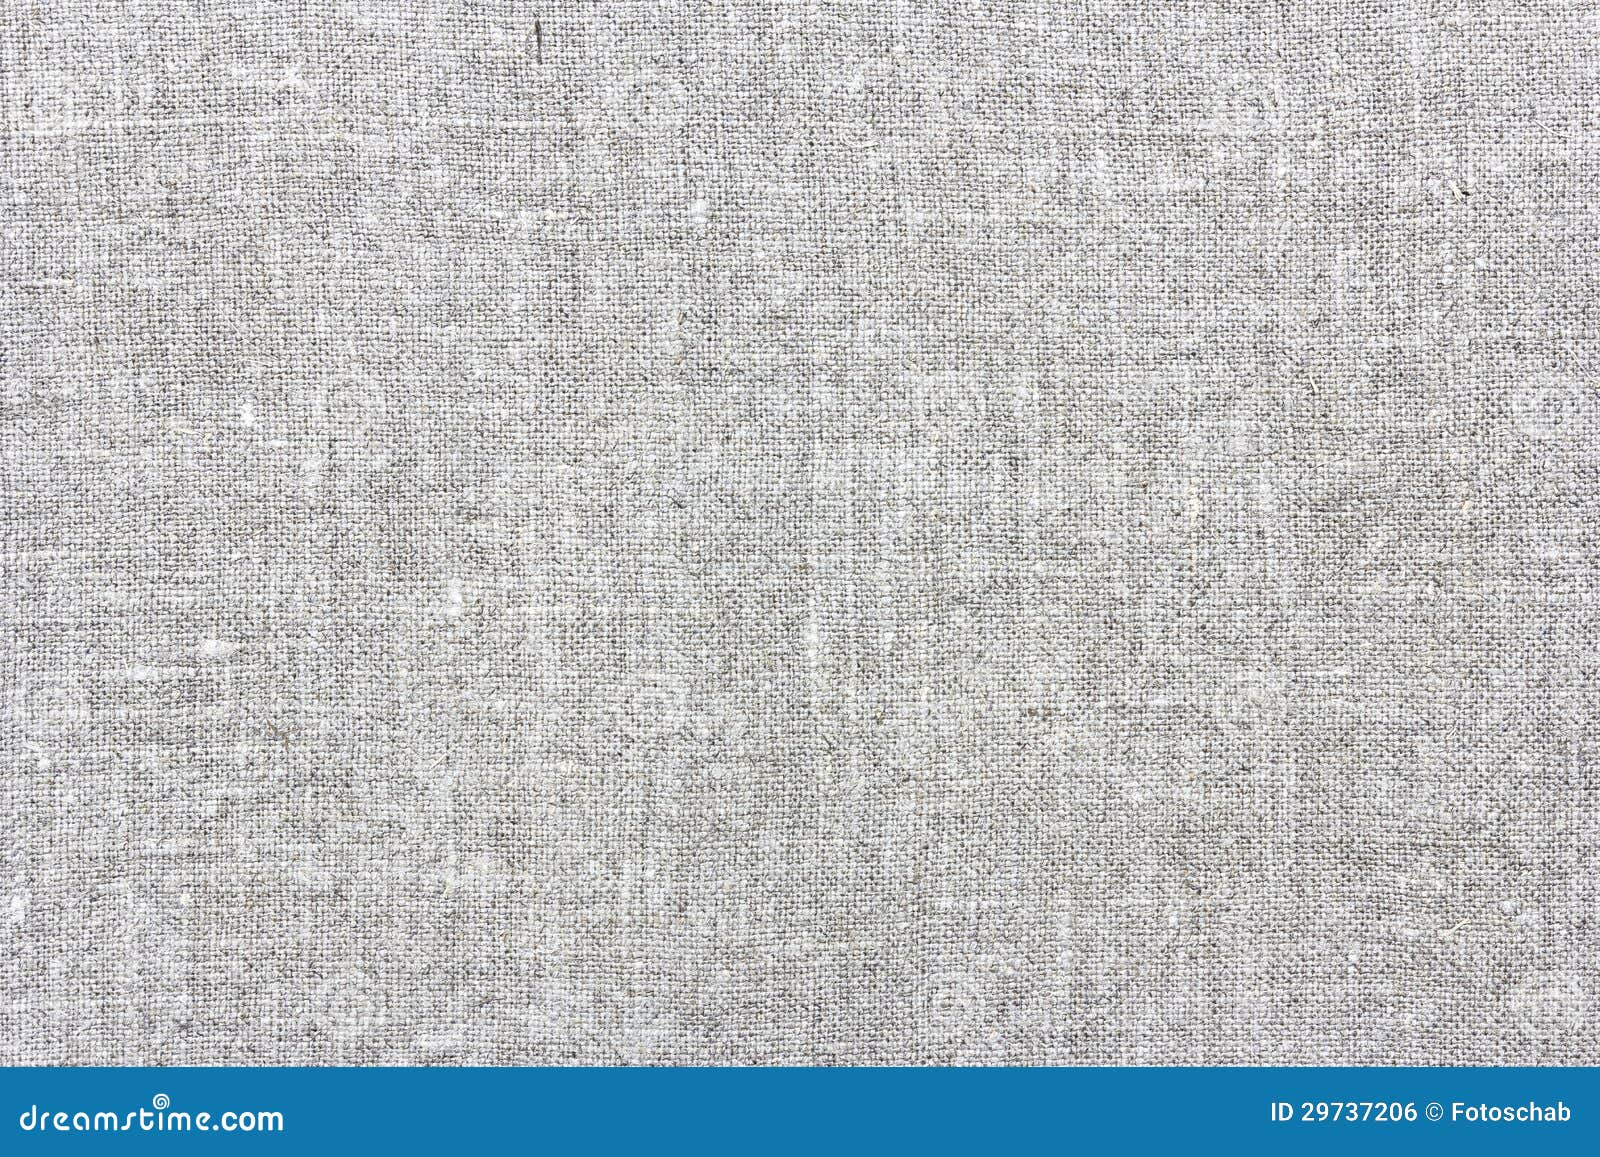 Natural linen texture stock photo. Image of layer, closeup - 29737206